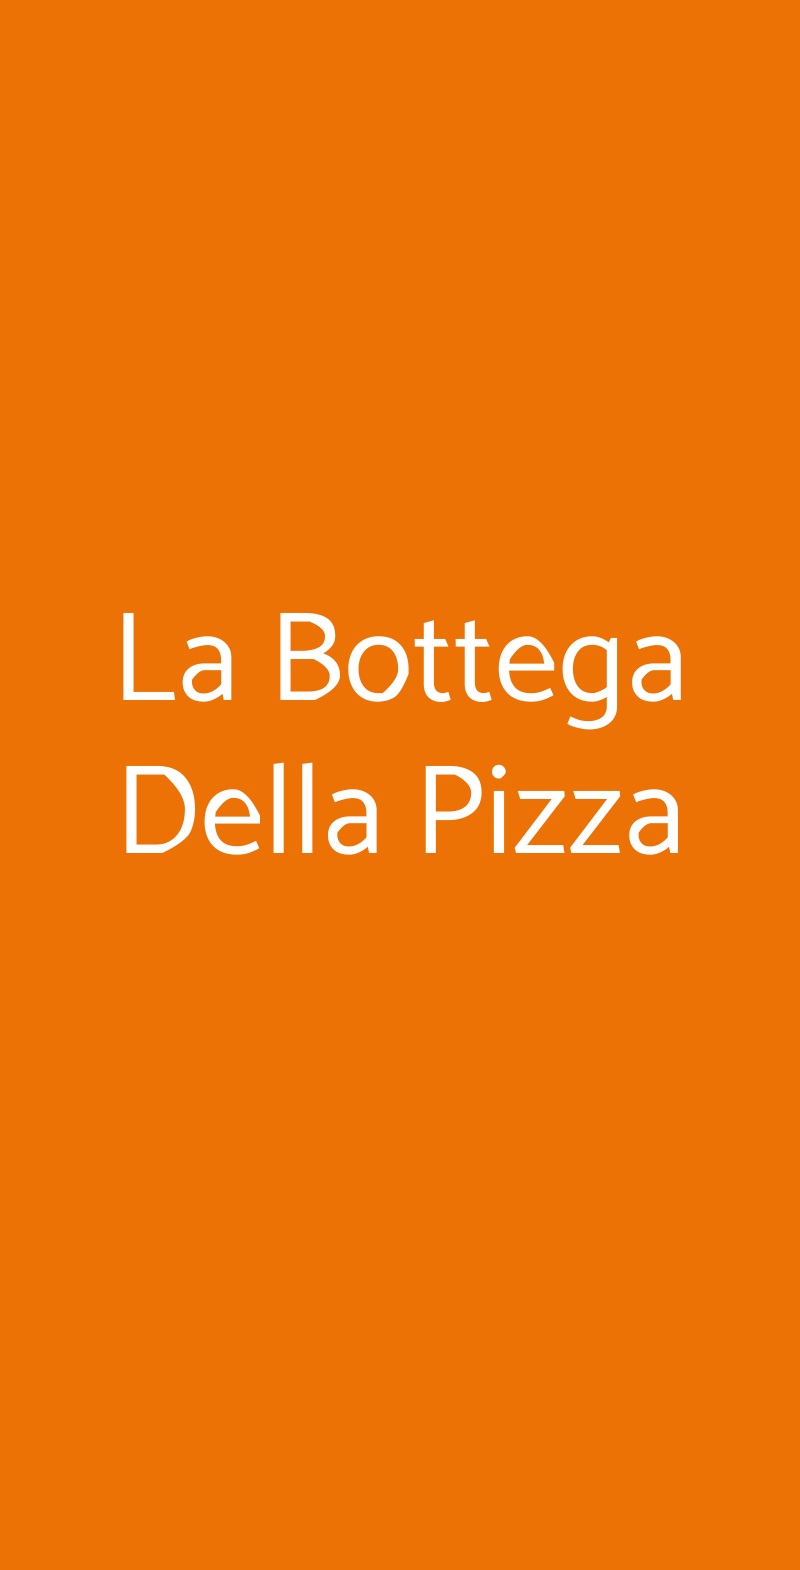 La Bottega Della Pizza Firenze menù 1 pagina